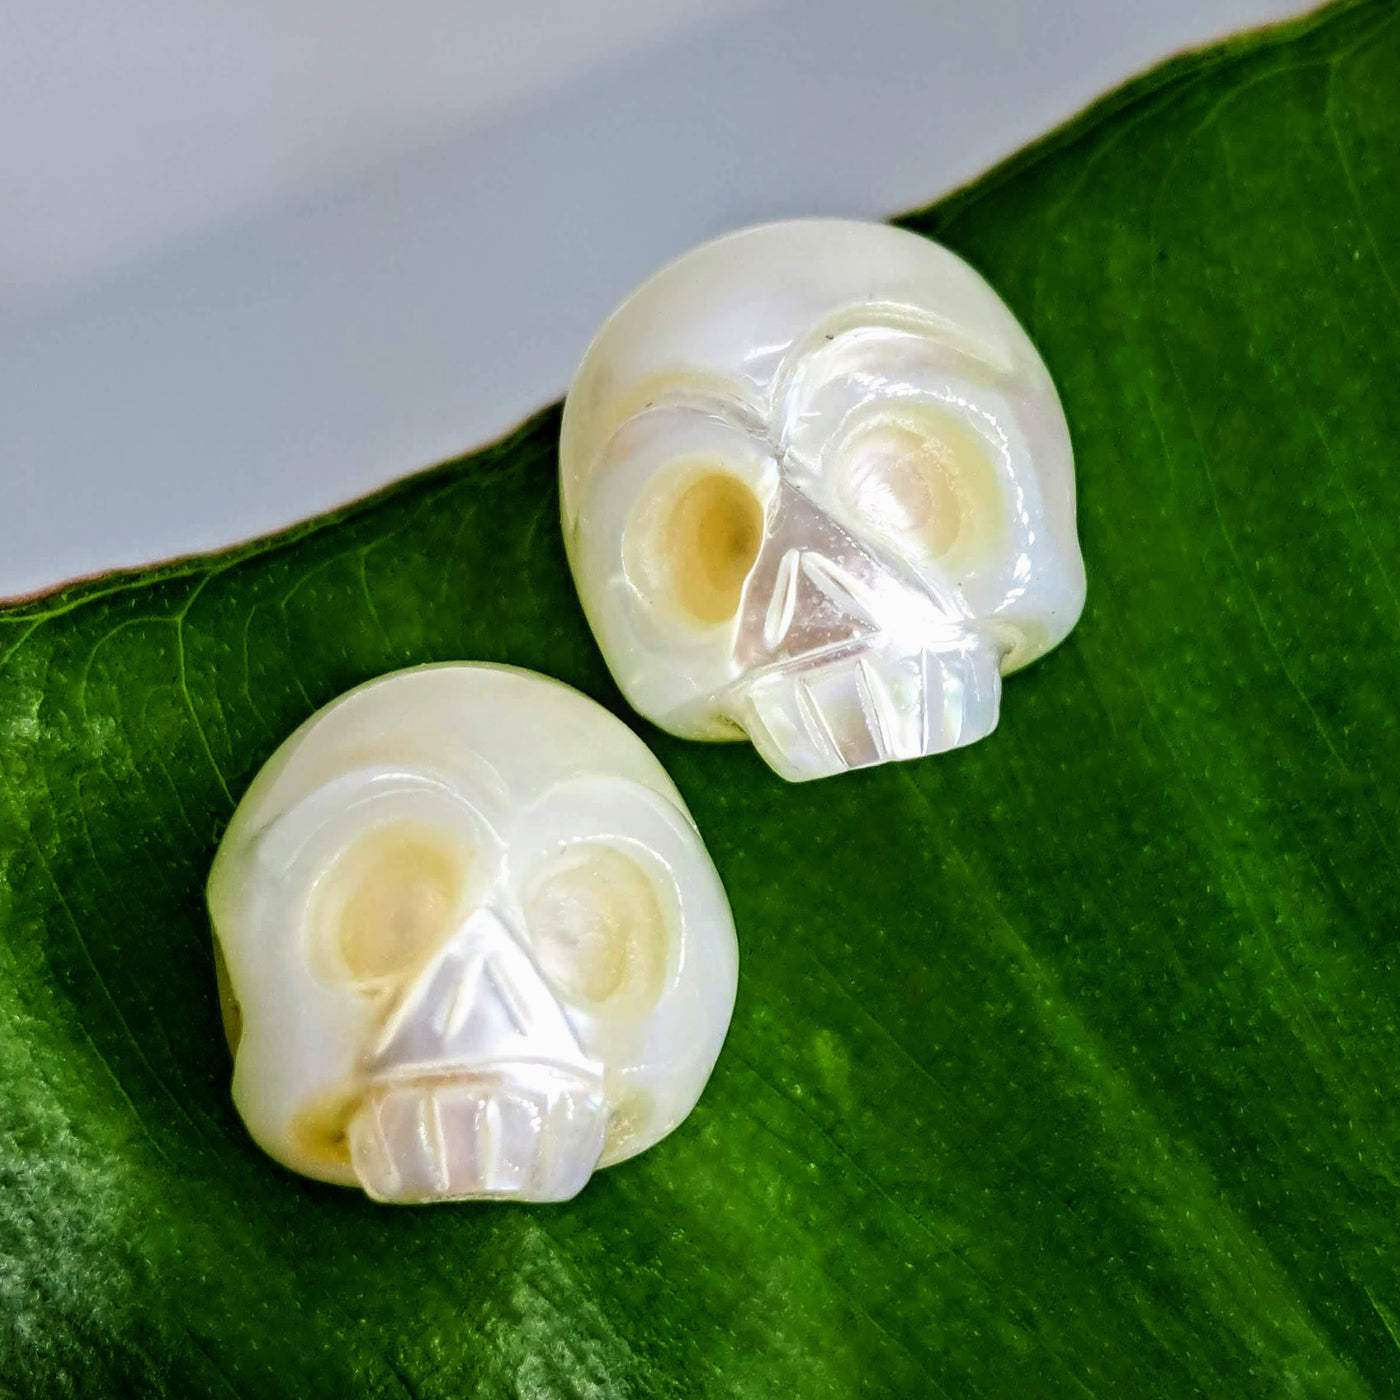 "Sugar Skull" .5" Stud Earrings - Hand-carved Pearls, Sterling